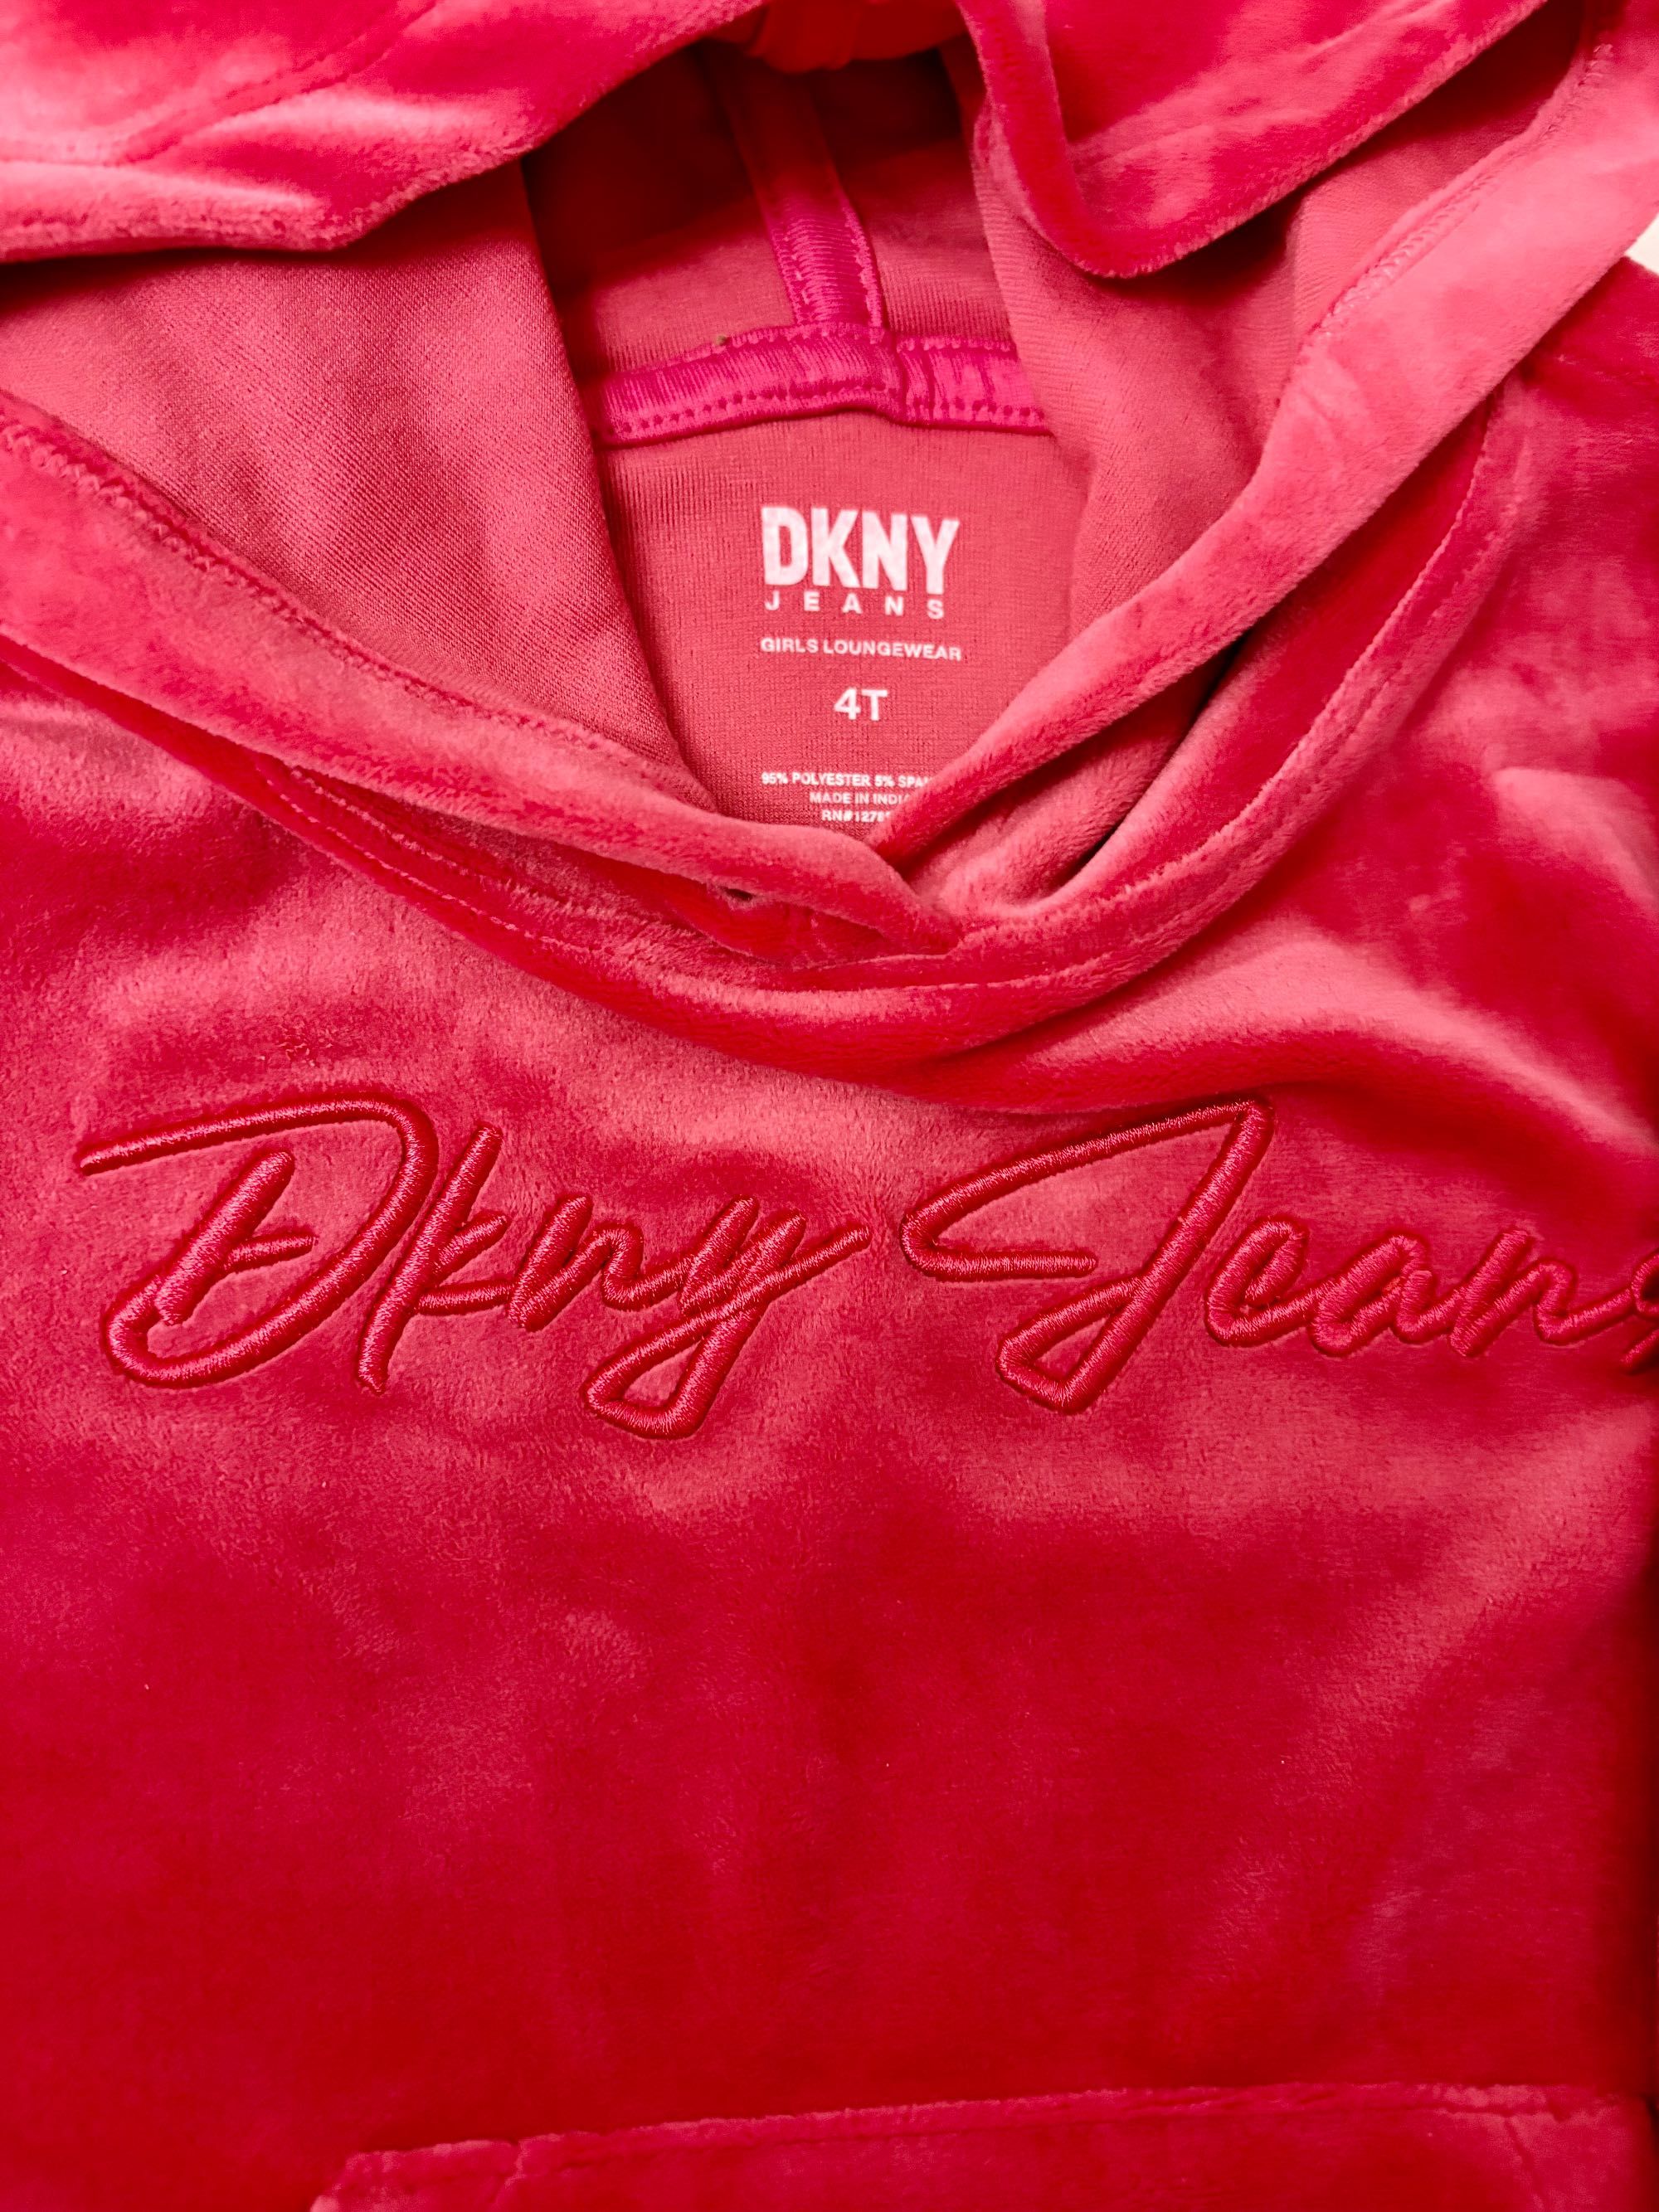 DKNY Dres komplet NOWY dla dziewczynki rozmiar 104